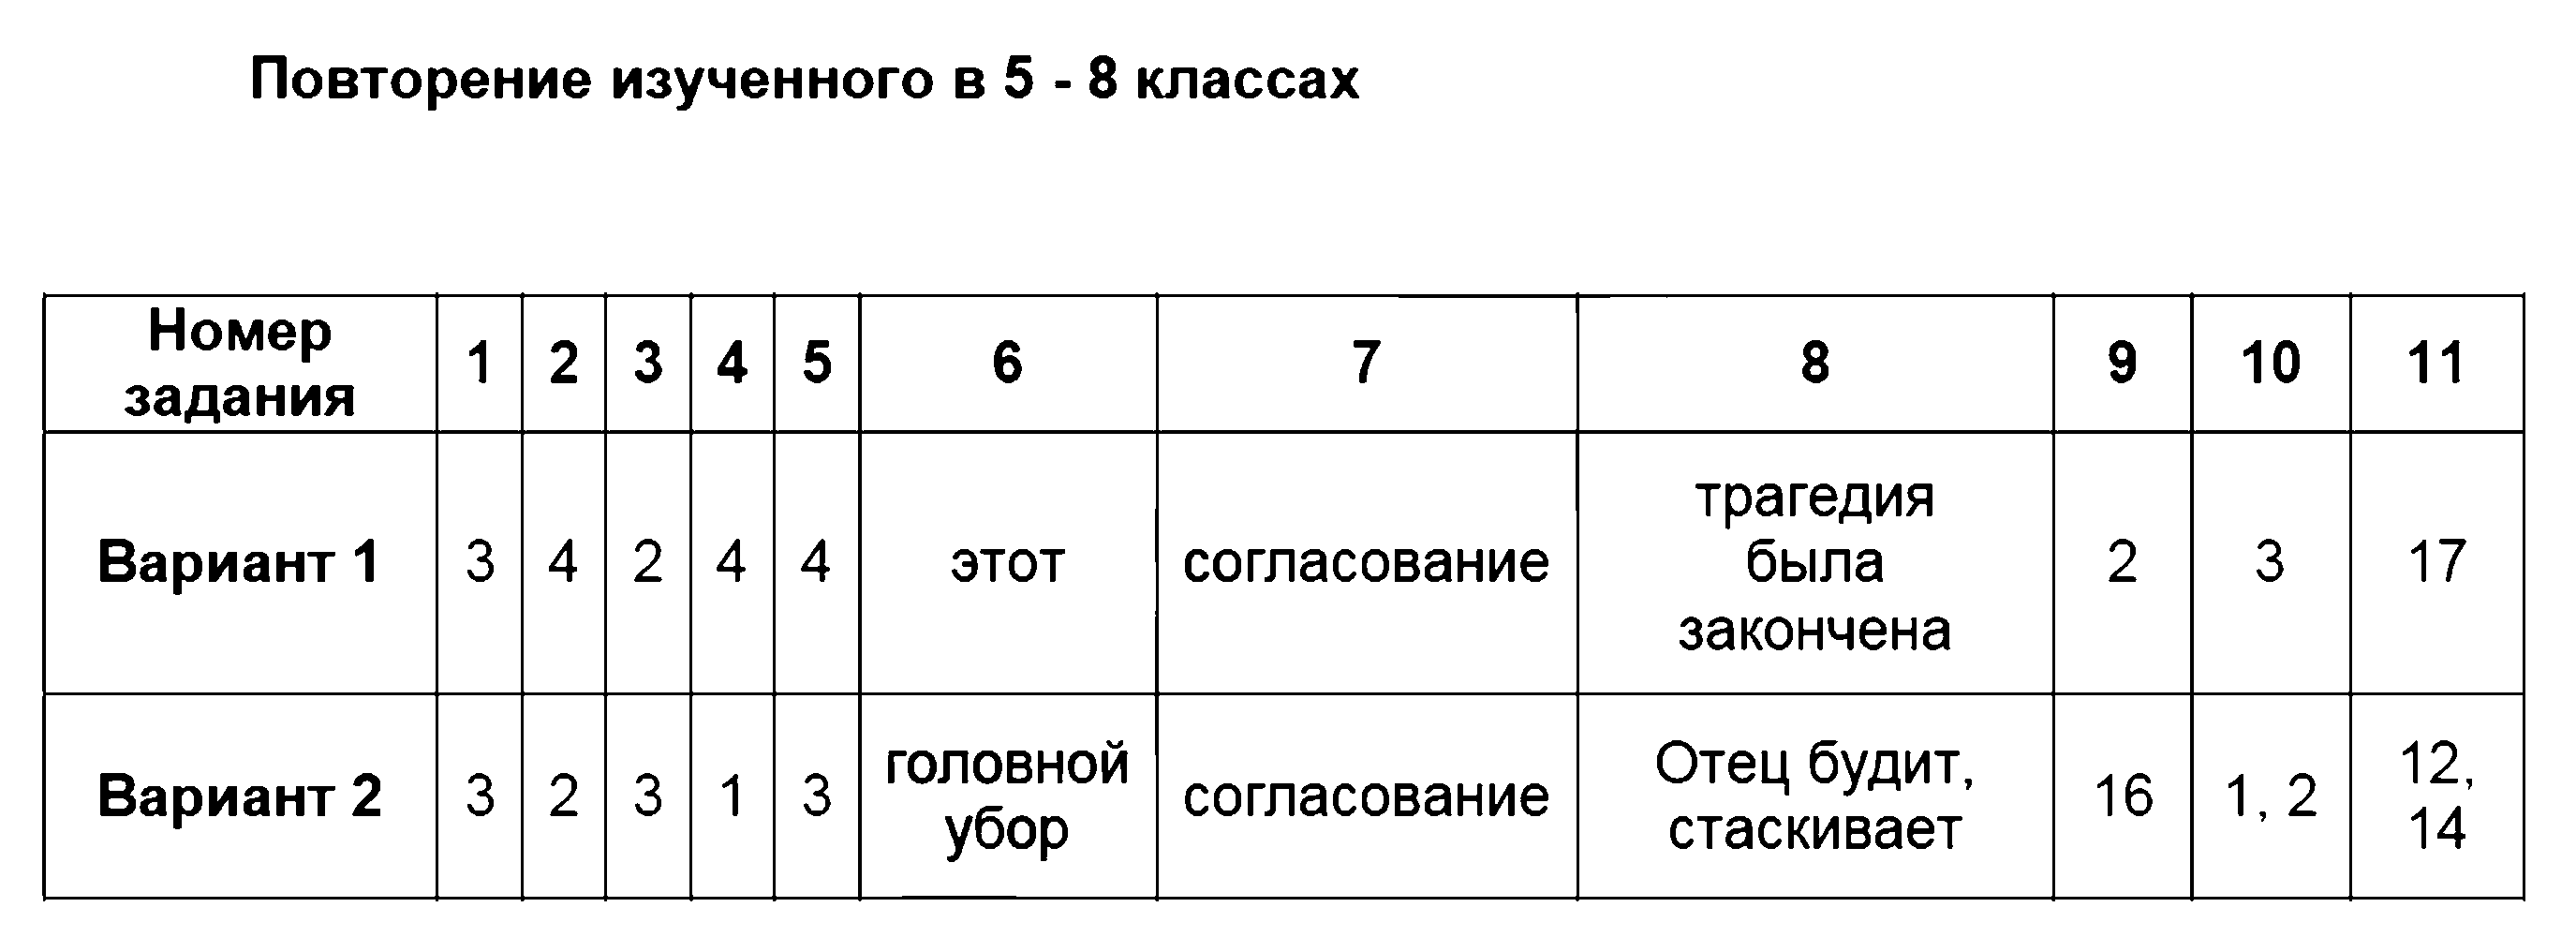 ГДЗ Русский язык 9 класс - Повторение изученного в 5 - 8 классах